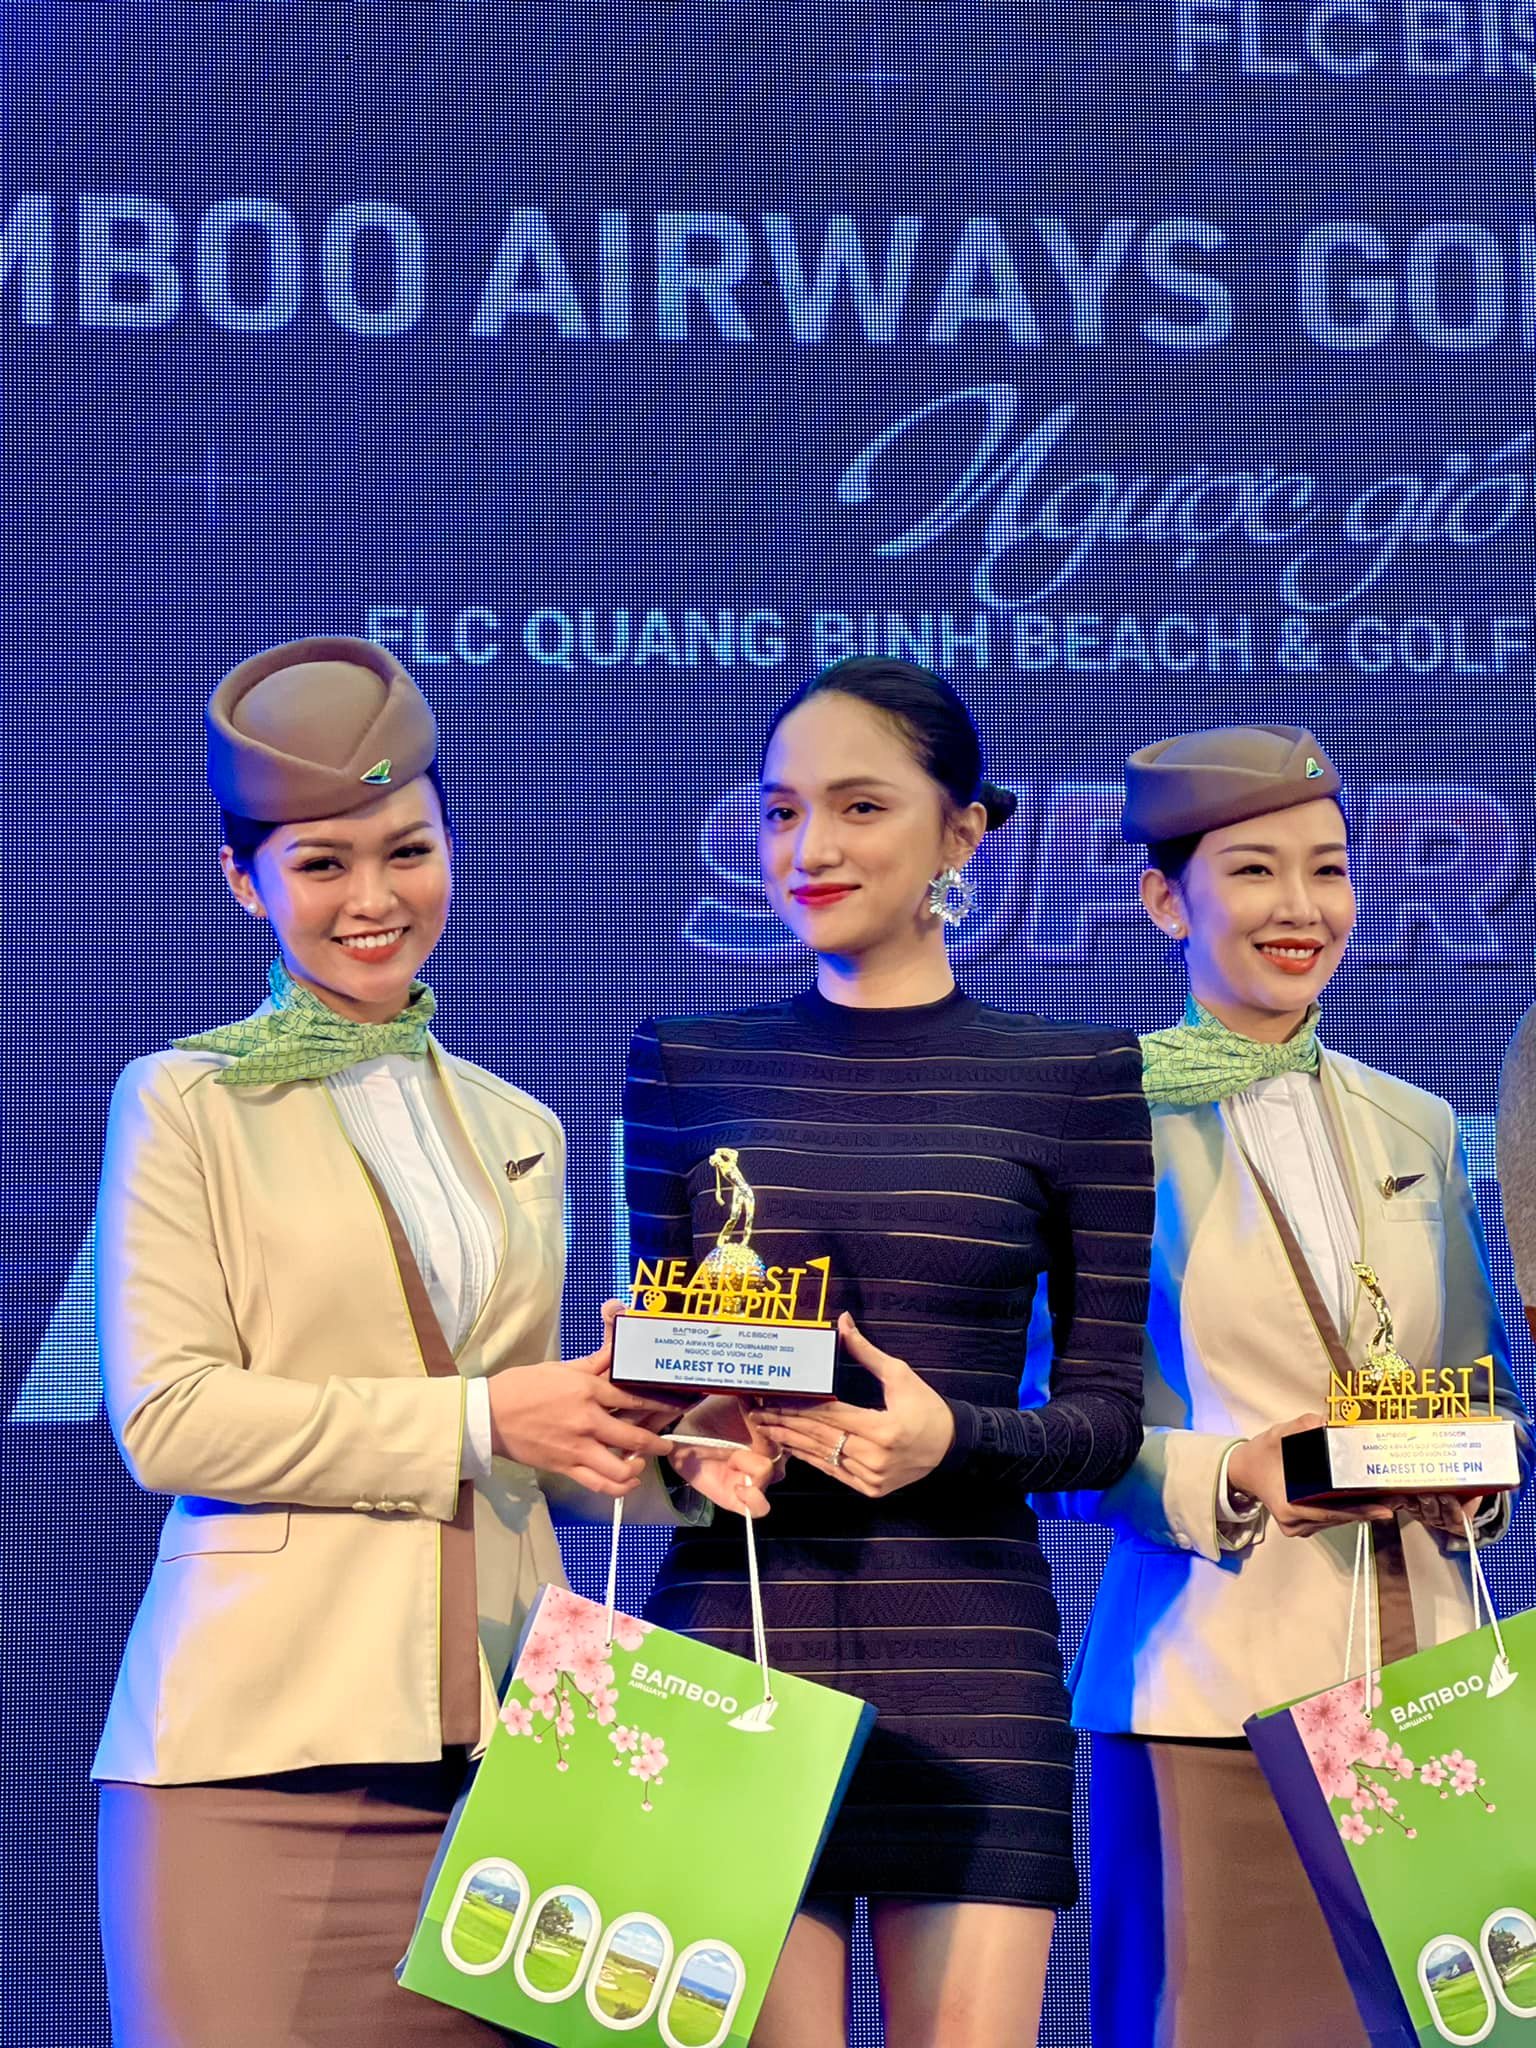 Hương Giang giành giải 'Nearest to the pin' sau 1 năm chơi Goft.